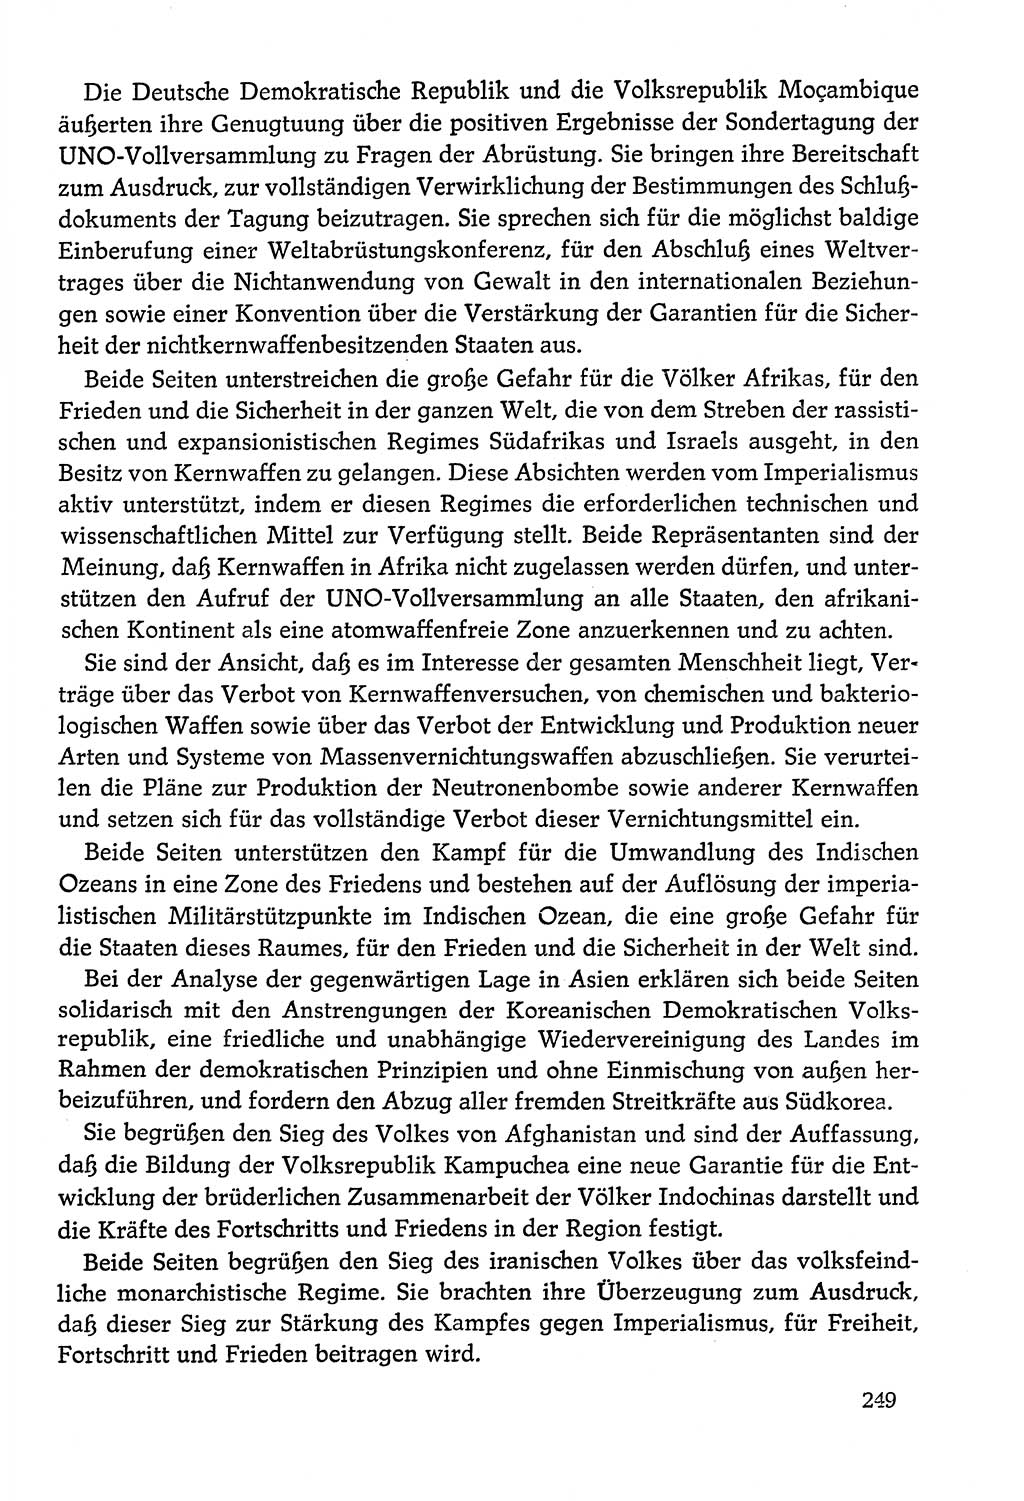 Dokumente der Sozialistischen Einheitspartei Deutschlands (SED) [Deutsche Demokratische Republik (DDR)] 1978-1979, Seite 249 (Dok. SED DDR 1978-1979, S. 249)